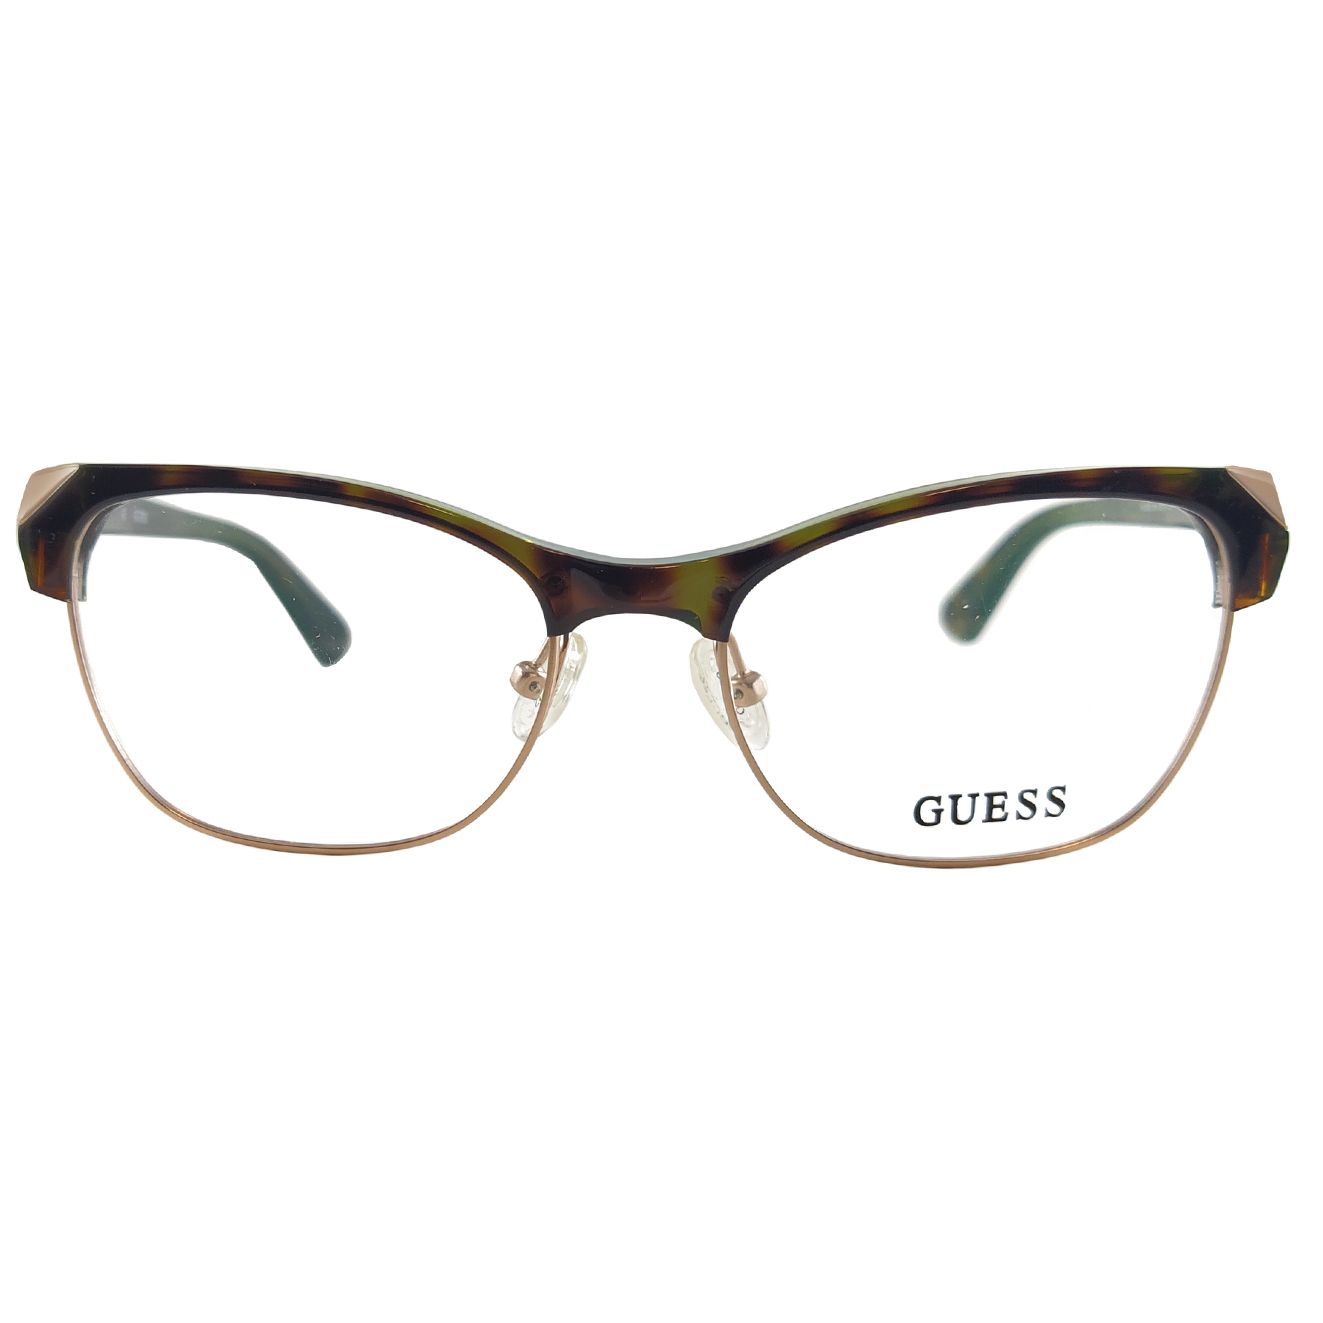 فریم عینک طبی زنانه گس مدل GU249305652 -  - 1